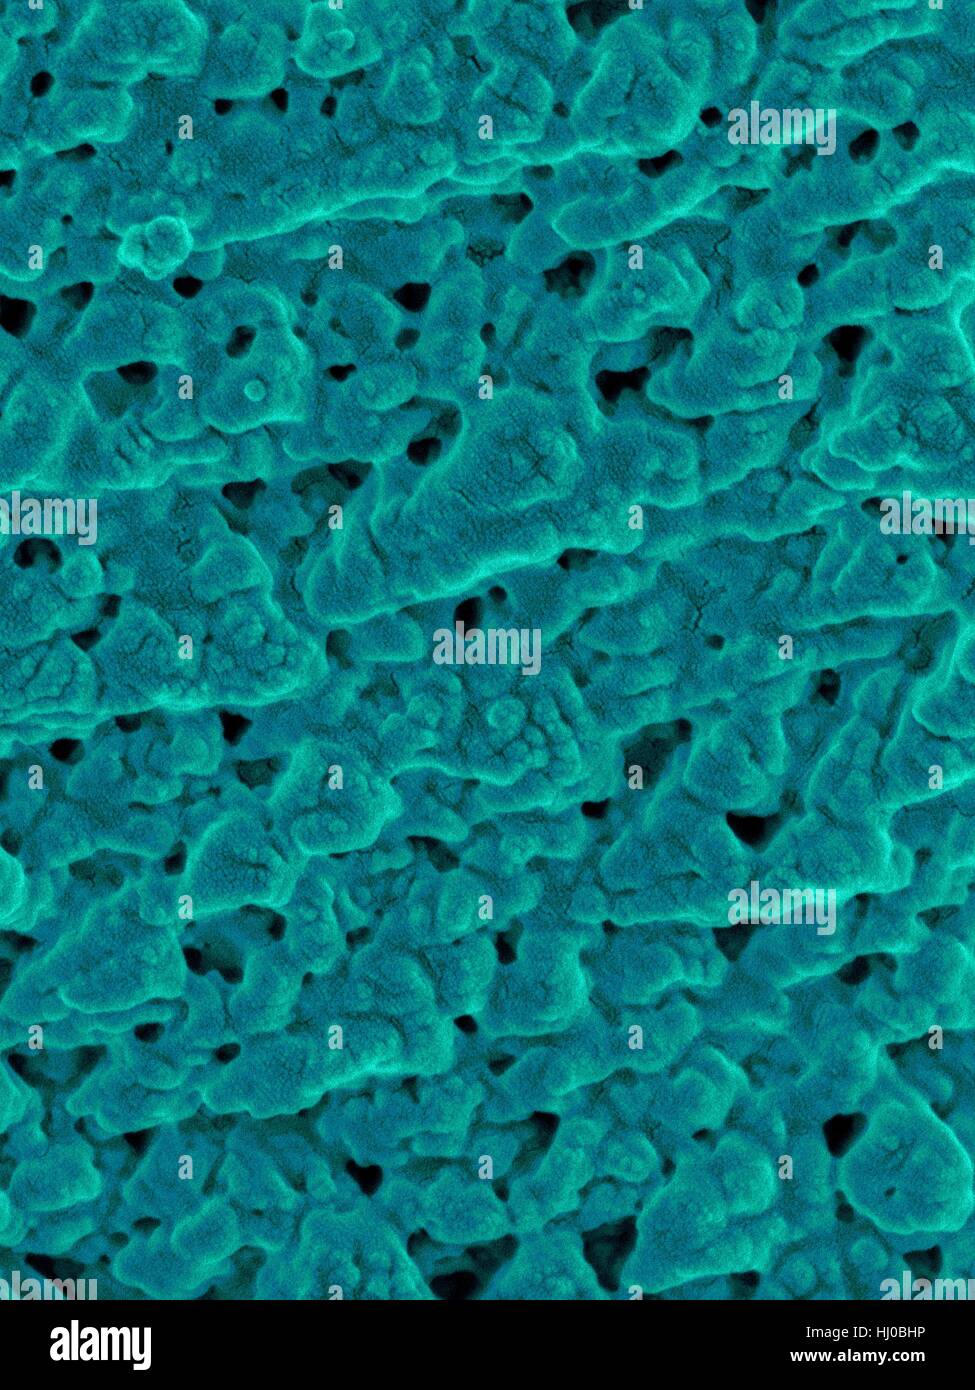 Farbige scanning Electron Schliffbild (SEM) Emu Eierschale Oberfläche winzige Poren (Dromaius Novaehollandiae). Calciumcarbonat-Kristalle bilden WWU Eierschale. Vogel-Eierschalen sind halbdurchlässige Membranen bestehend aus mineralisierten Calciumcarbonat gefüllt Tausende von Poren. Die Eierschale schützt Embryos in Stockfoto